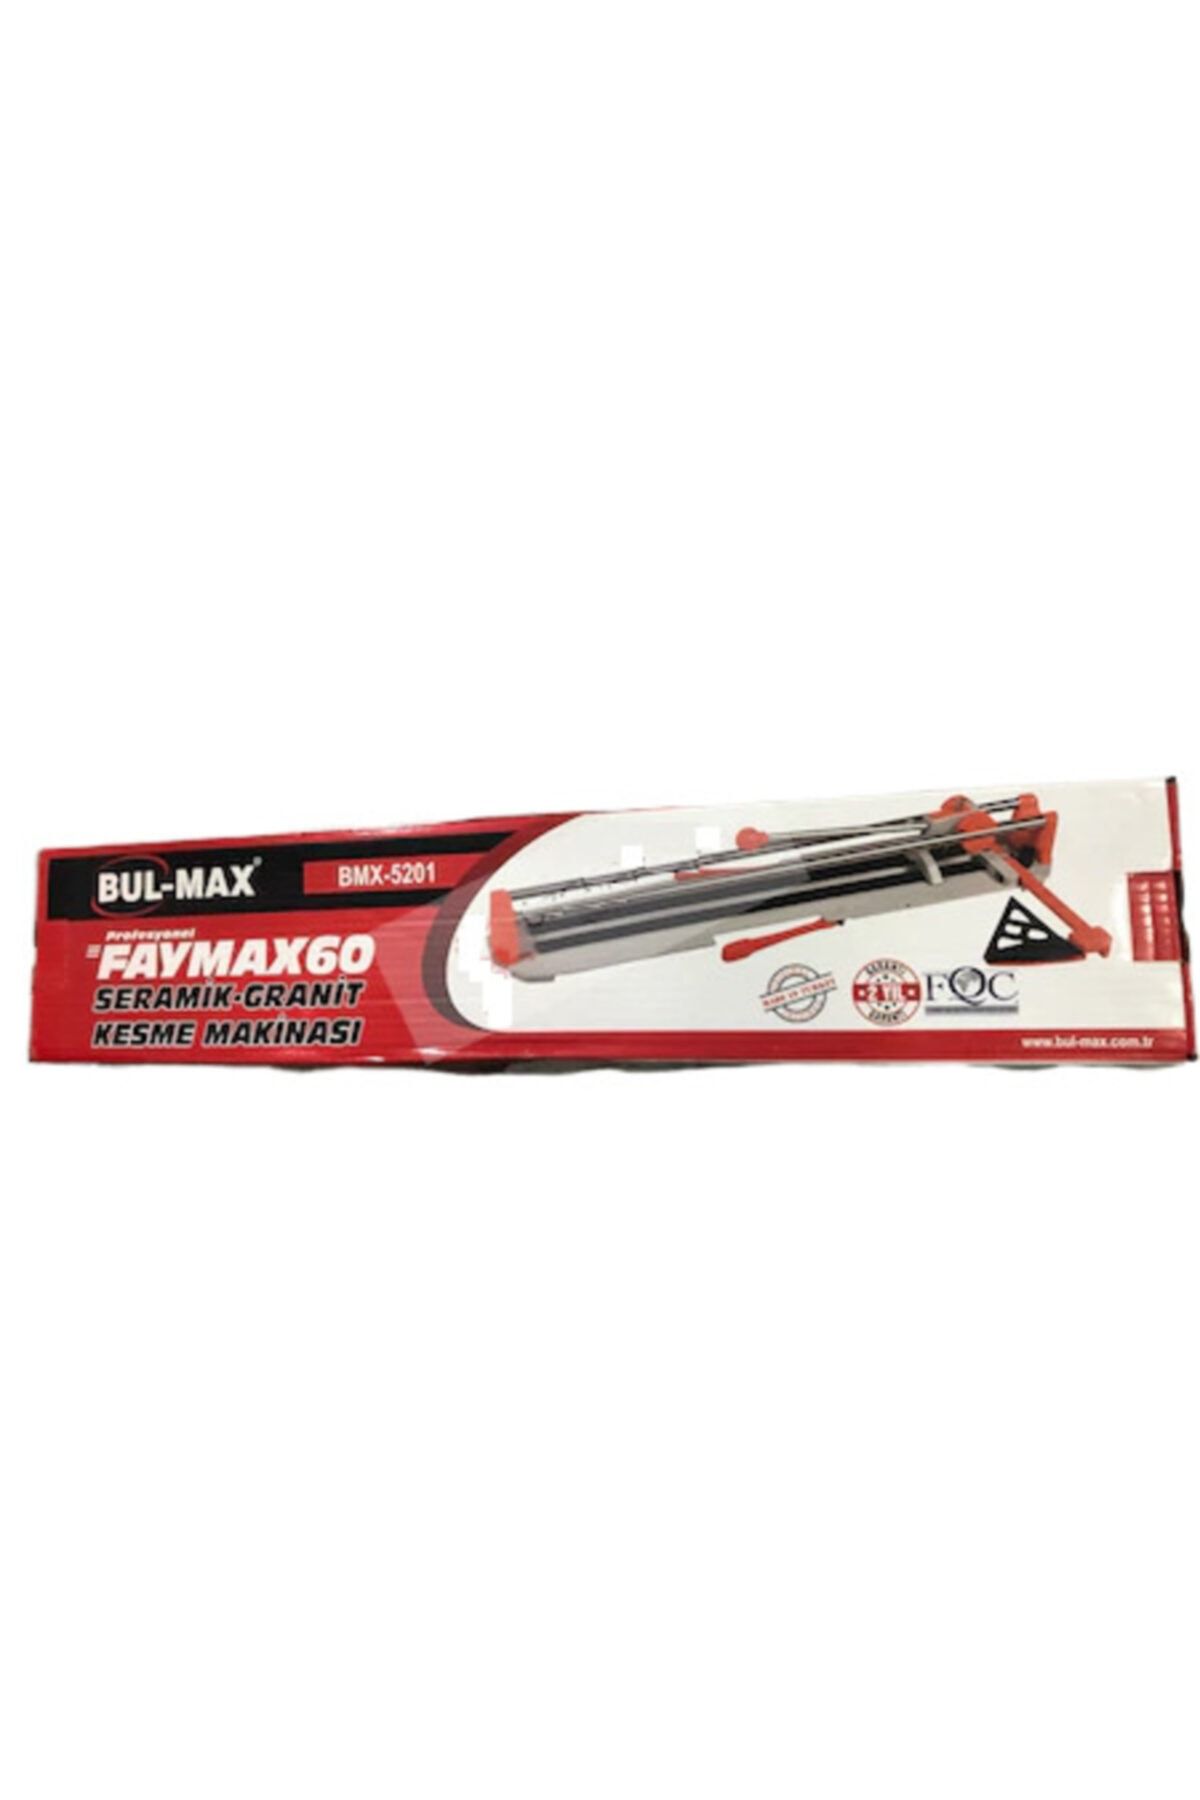 Bul-Max Seramik Kesme Makinası Bulmax Faymax 60 Cm Bmx5201